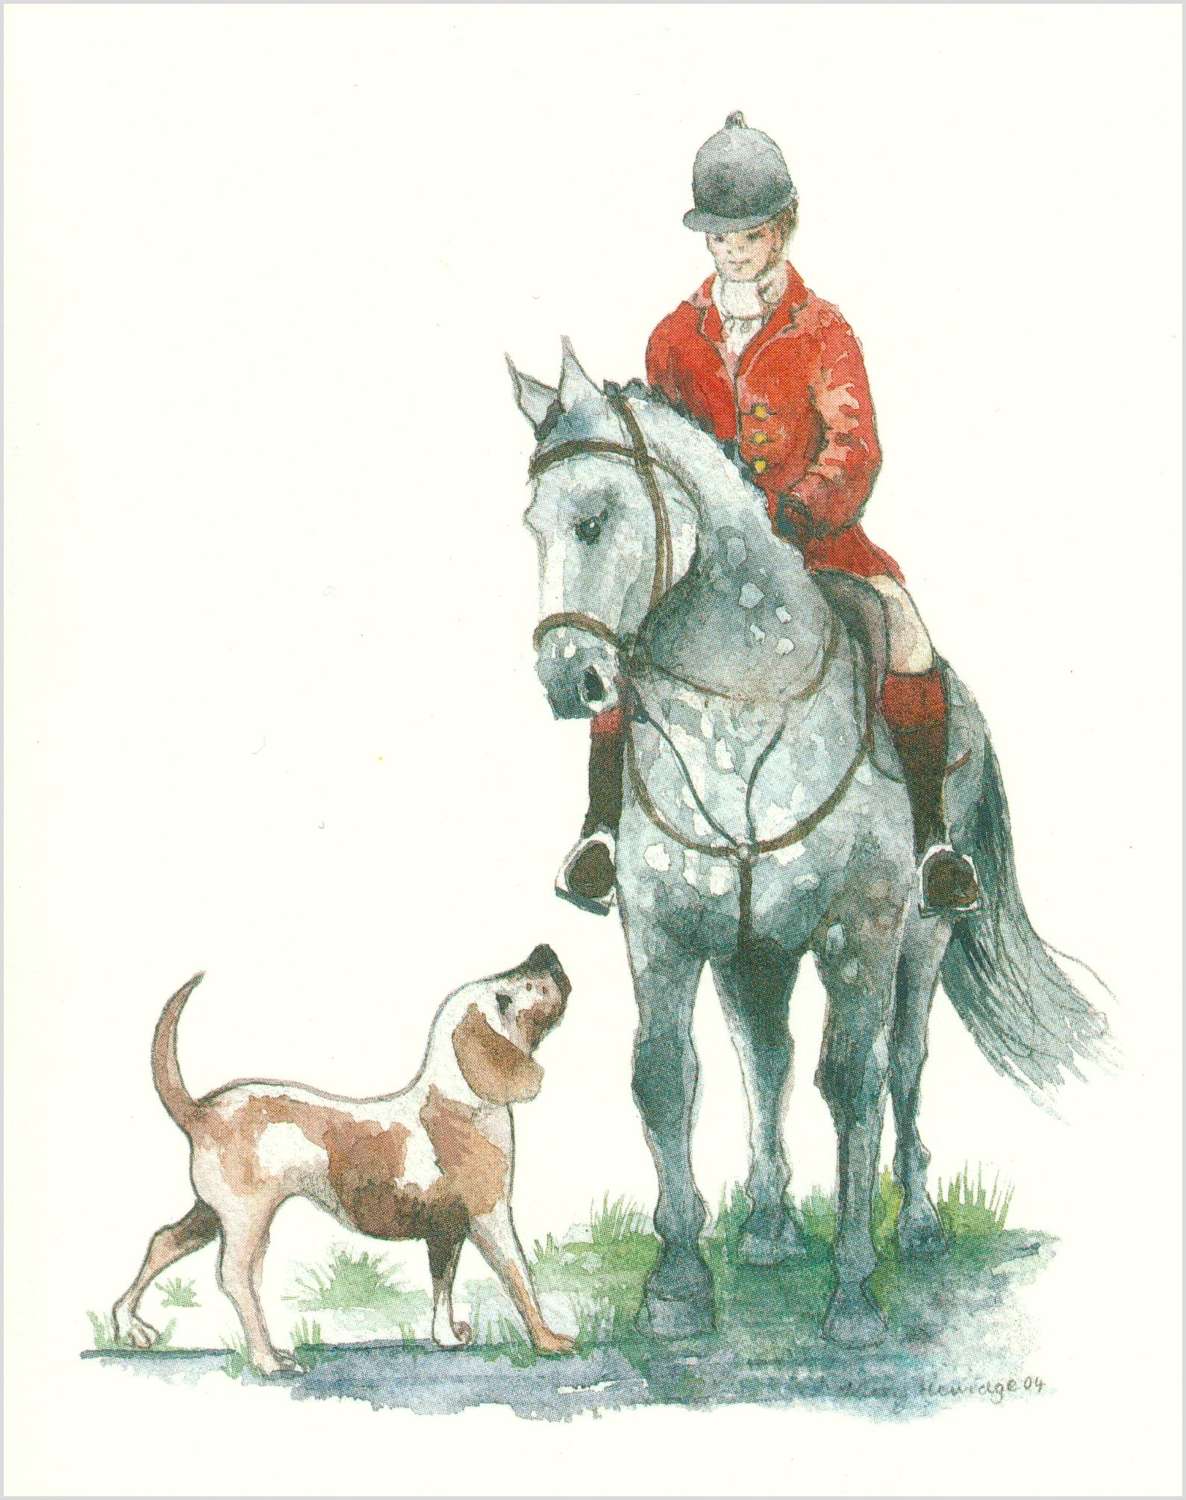 Horse & hound